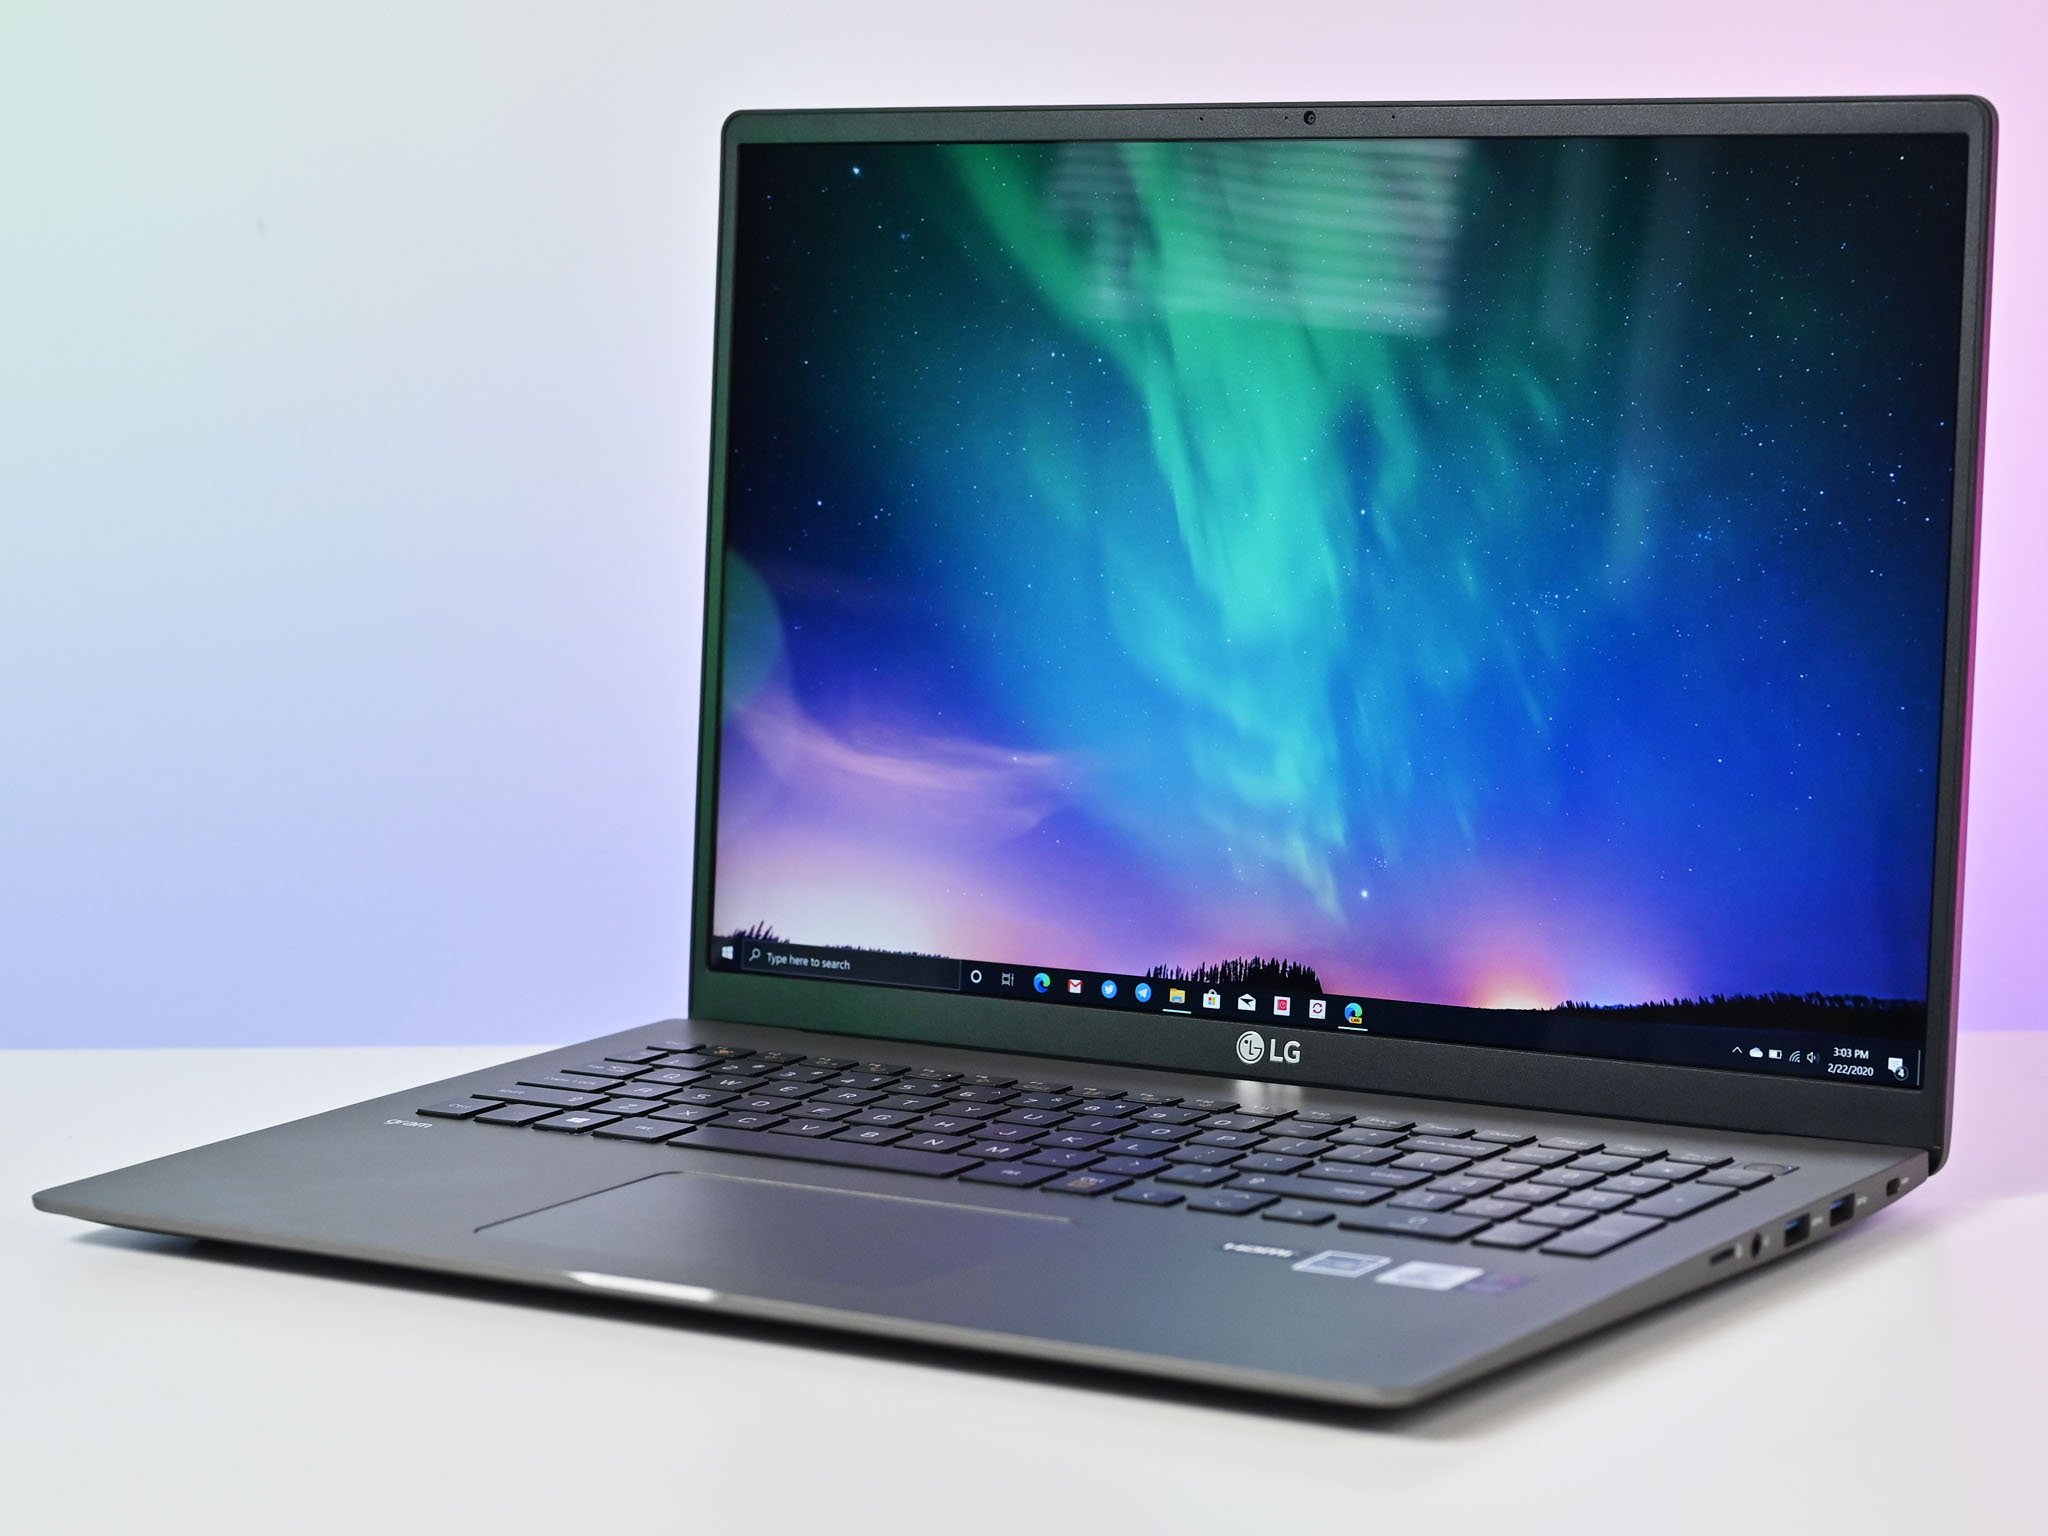 LG announces five new gram laptops ahead of CES 2021